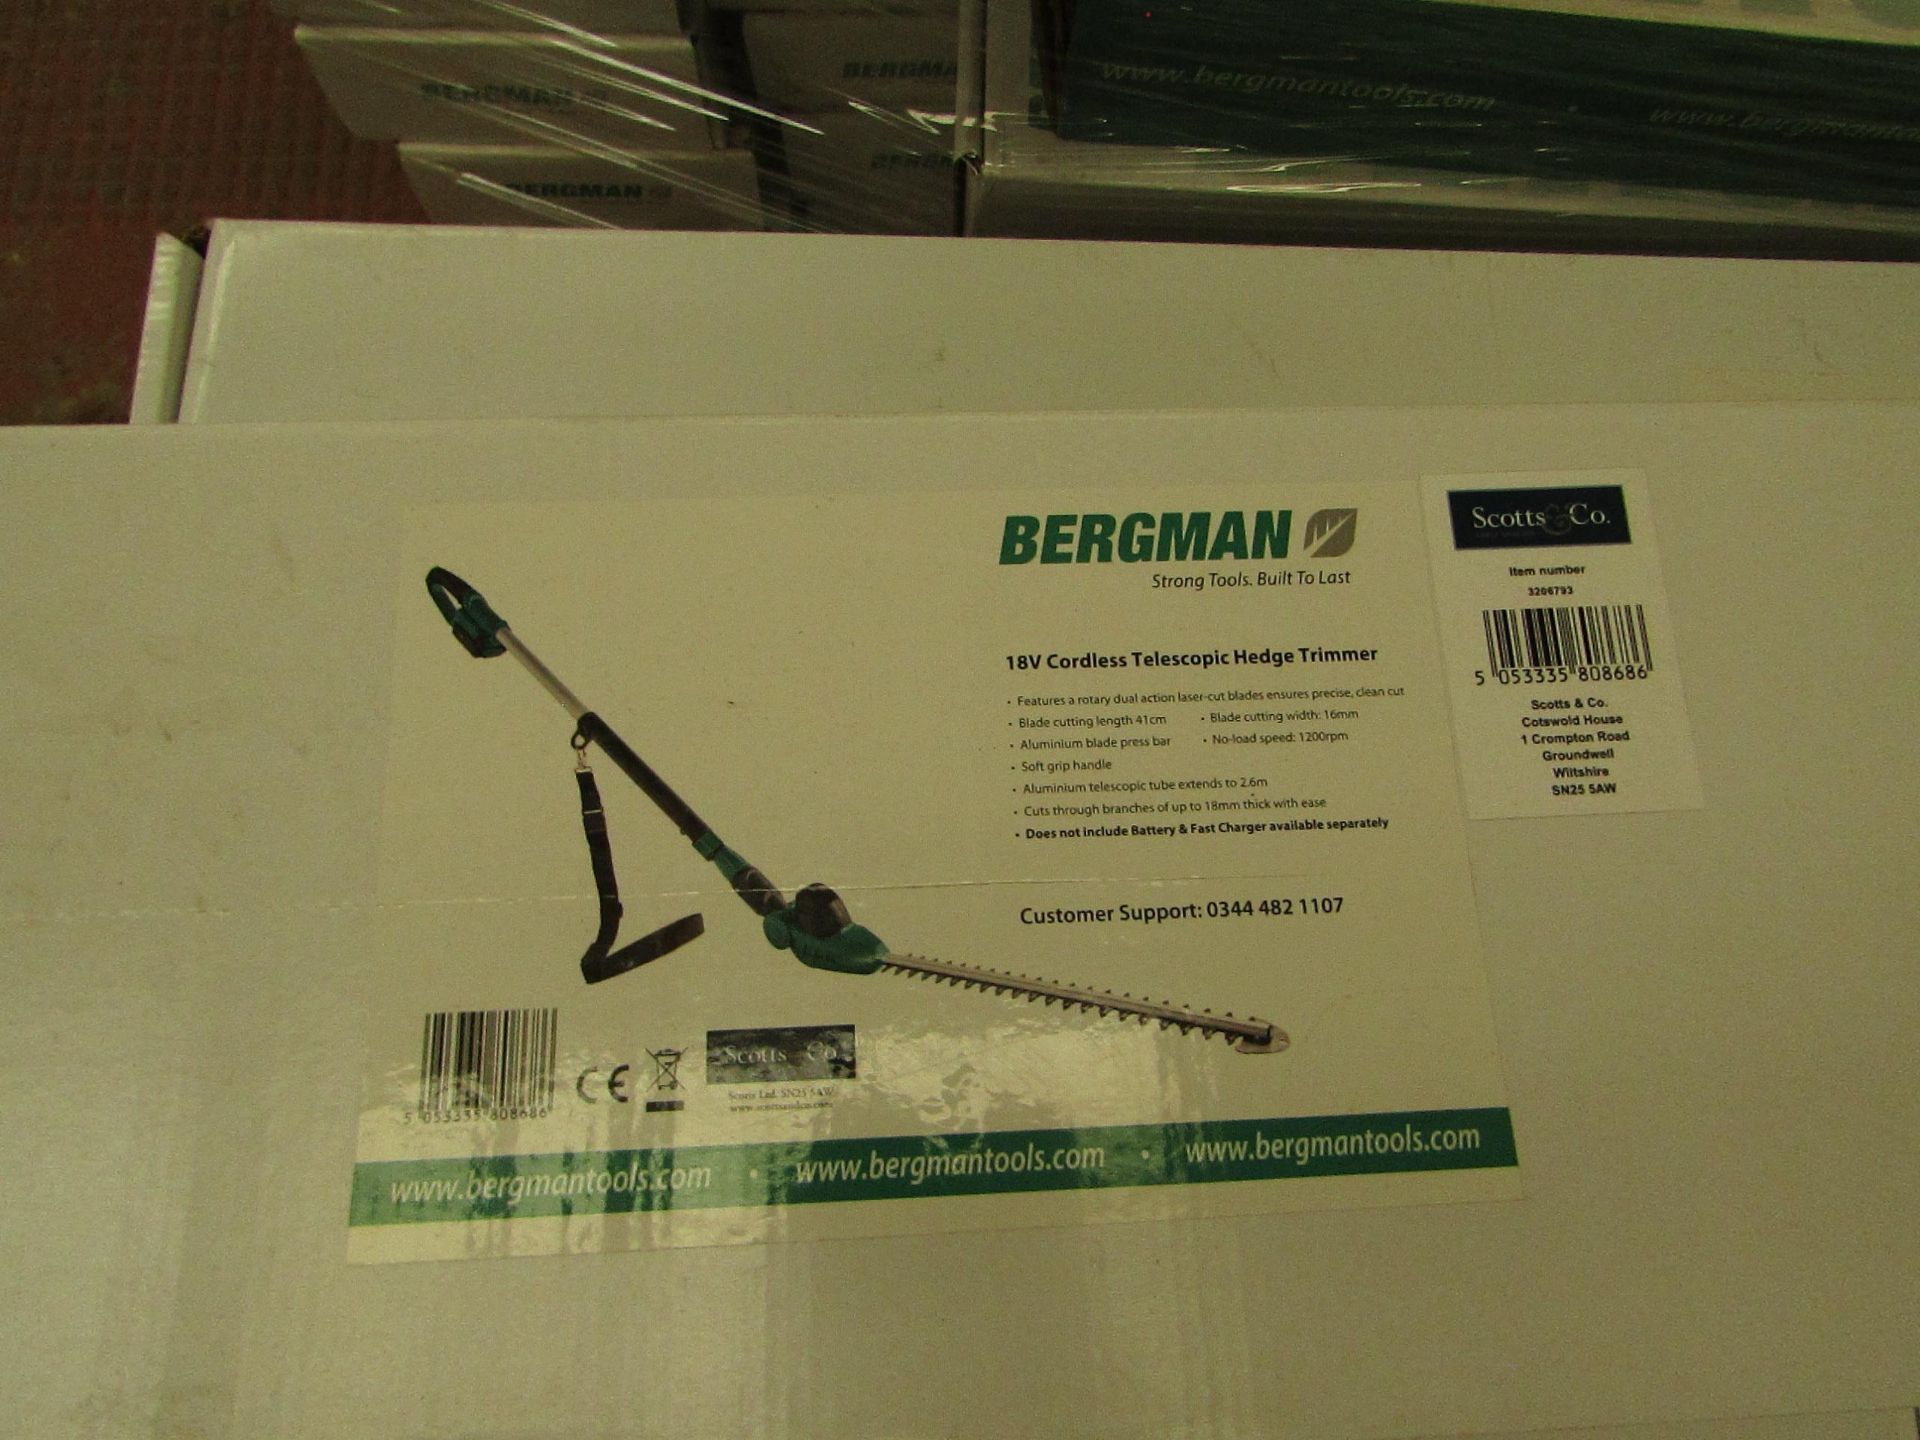 1 x Scotts of Stow Bergman® Interchange Cordless Telescopic Hedge Trimmer RRP £69.95 SKU SCO-DIR-